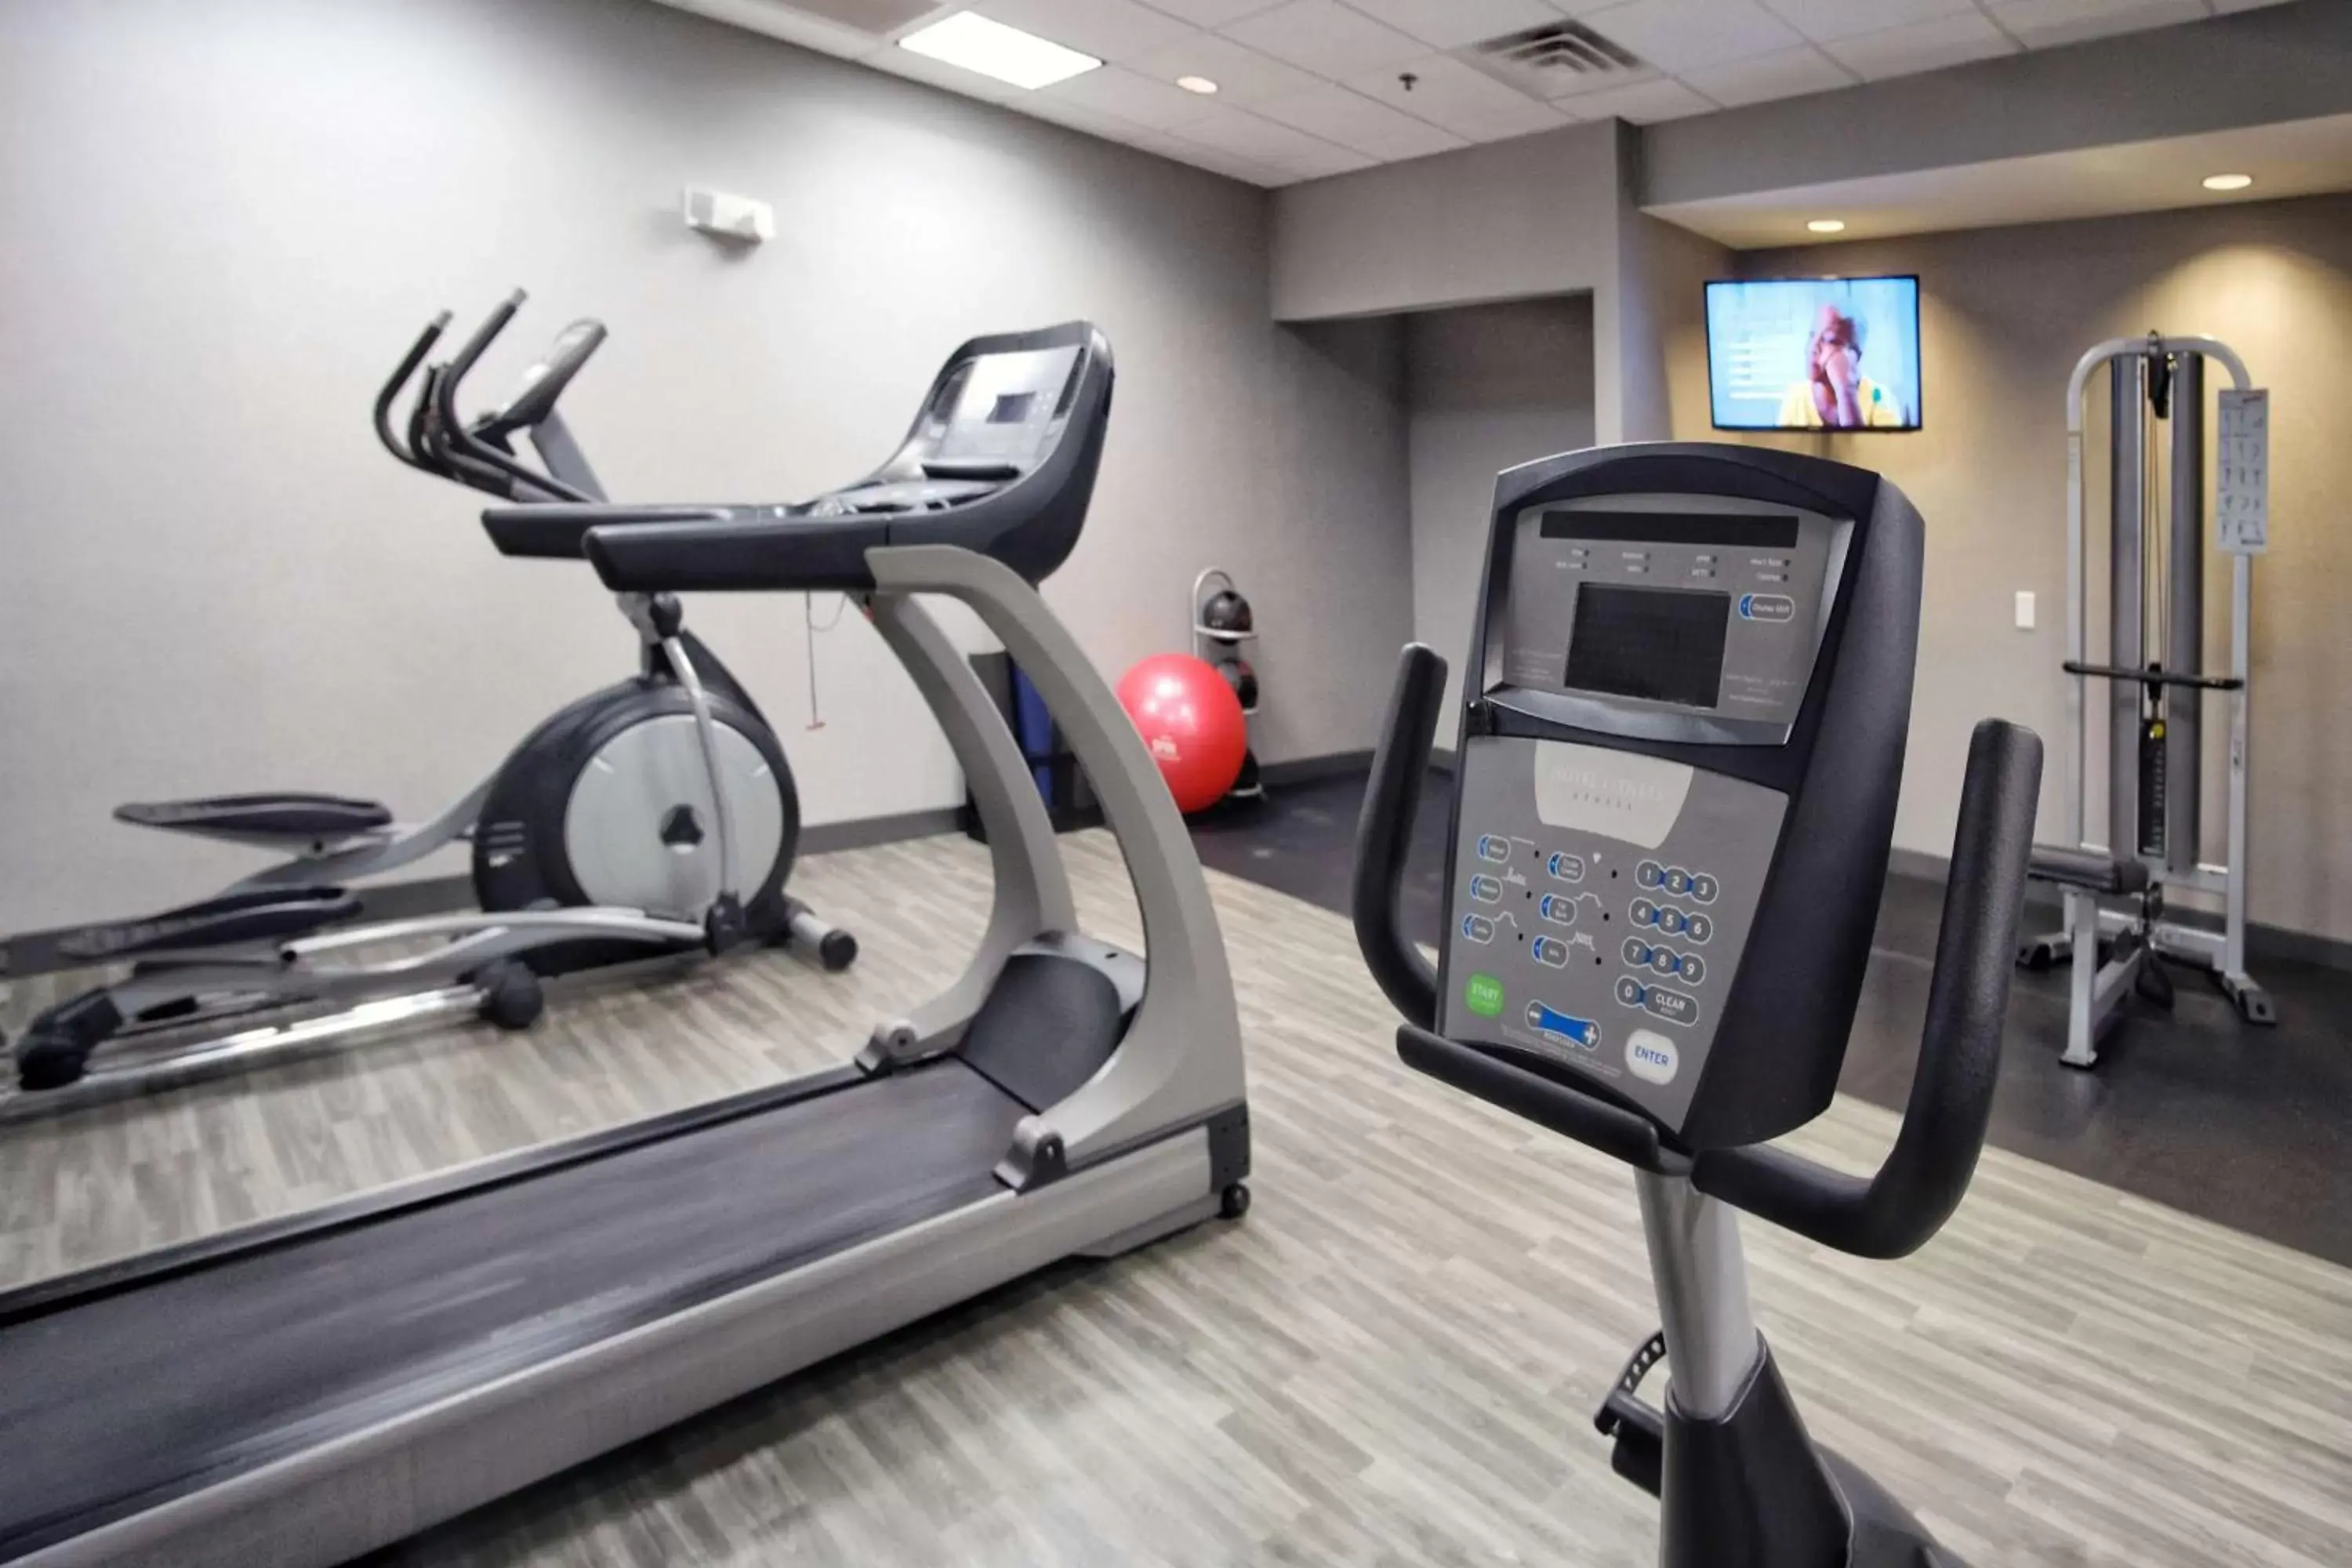 Fitness centre/facilities, Fitness Center/Facilities in Hampton Inn Oklahoma City/Yukon